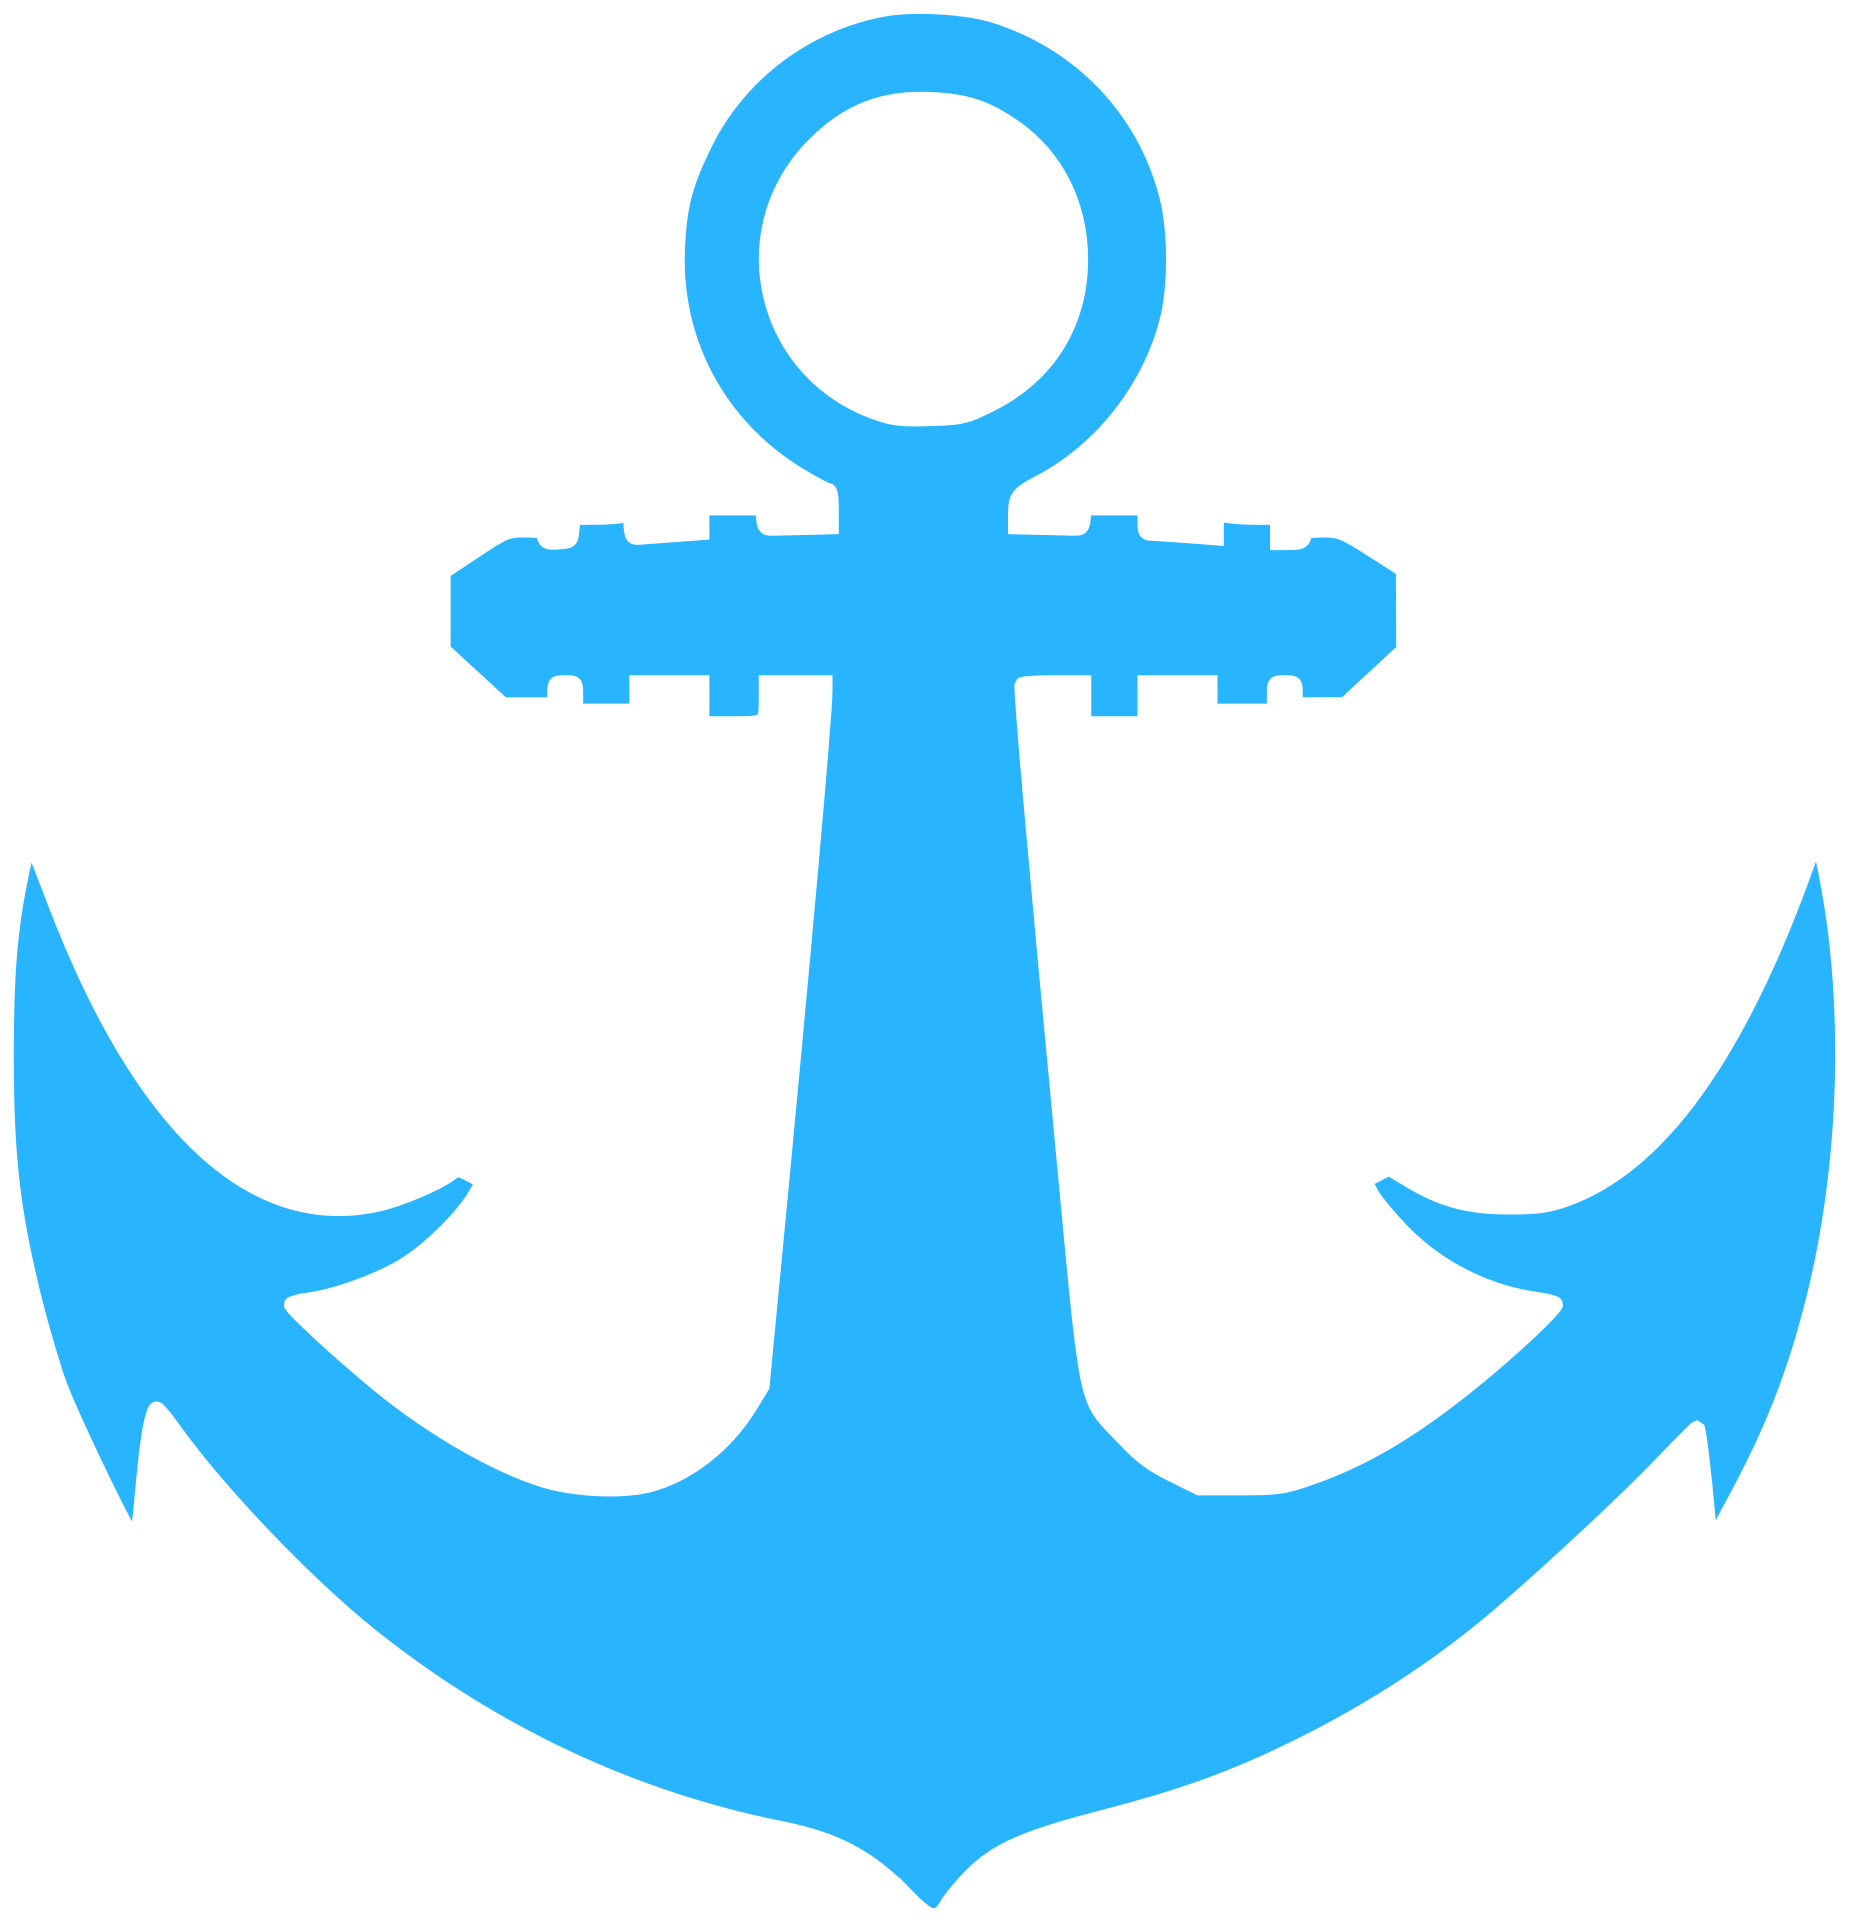 Anchor logo